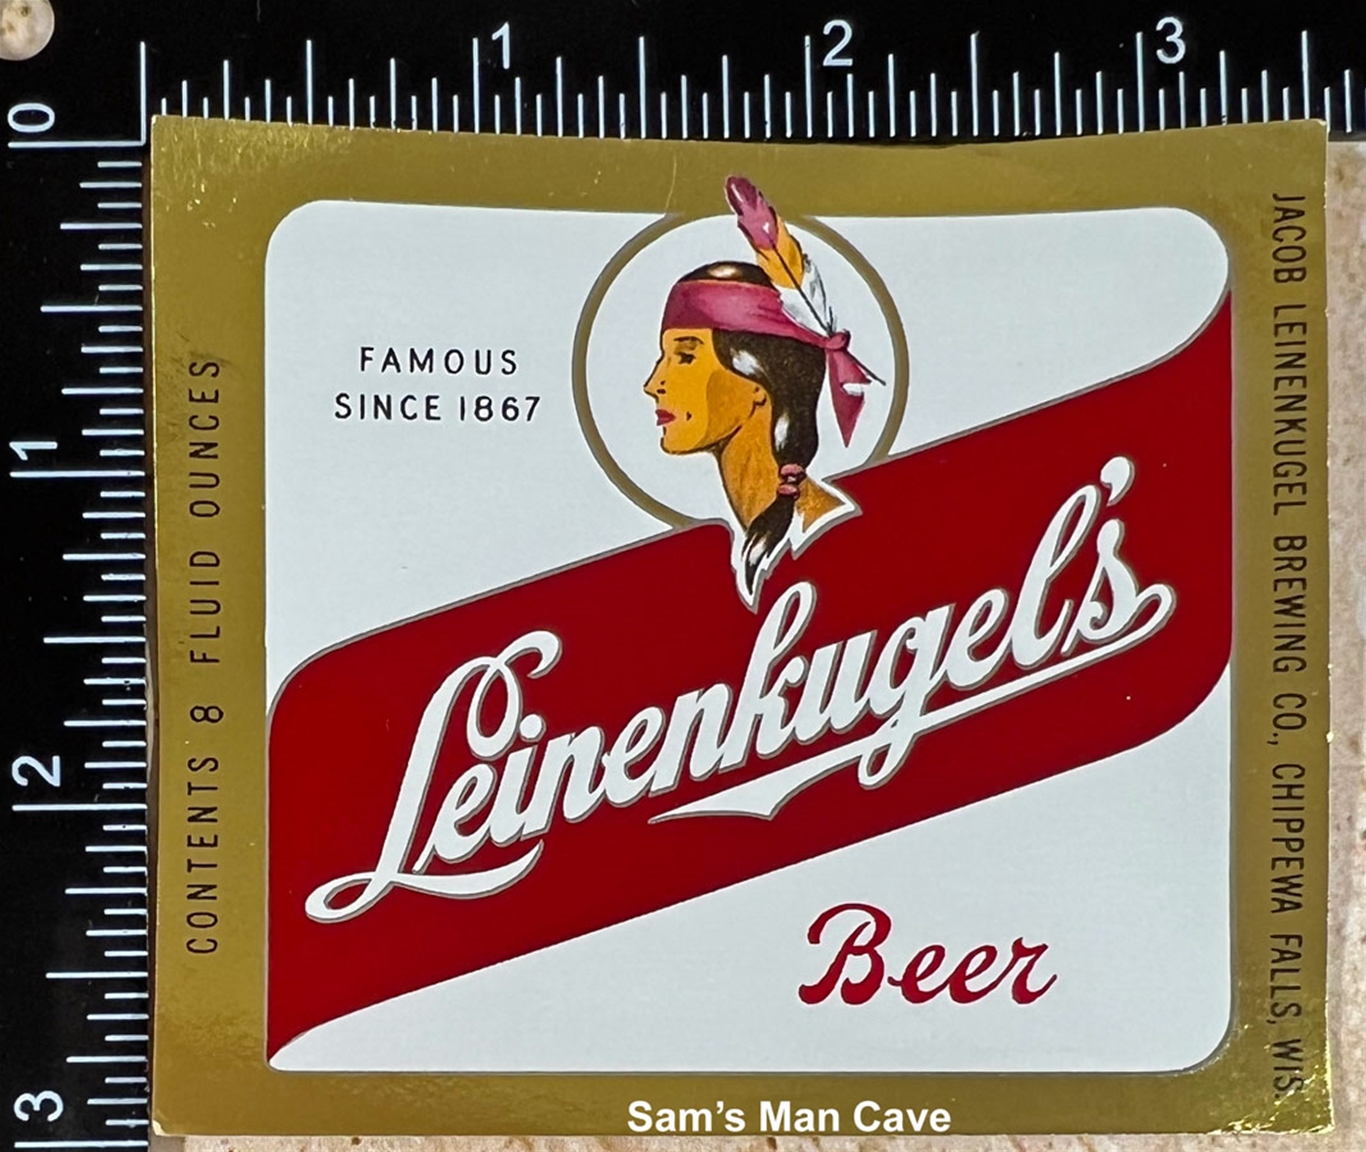 Leinenkugel's Beer Label